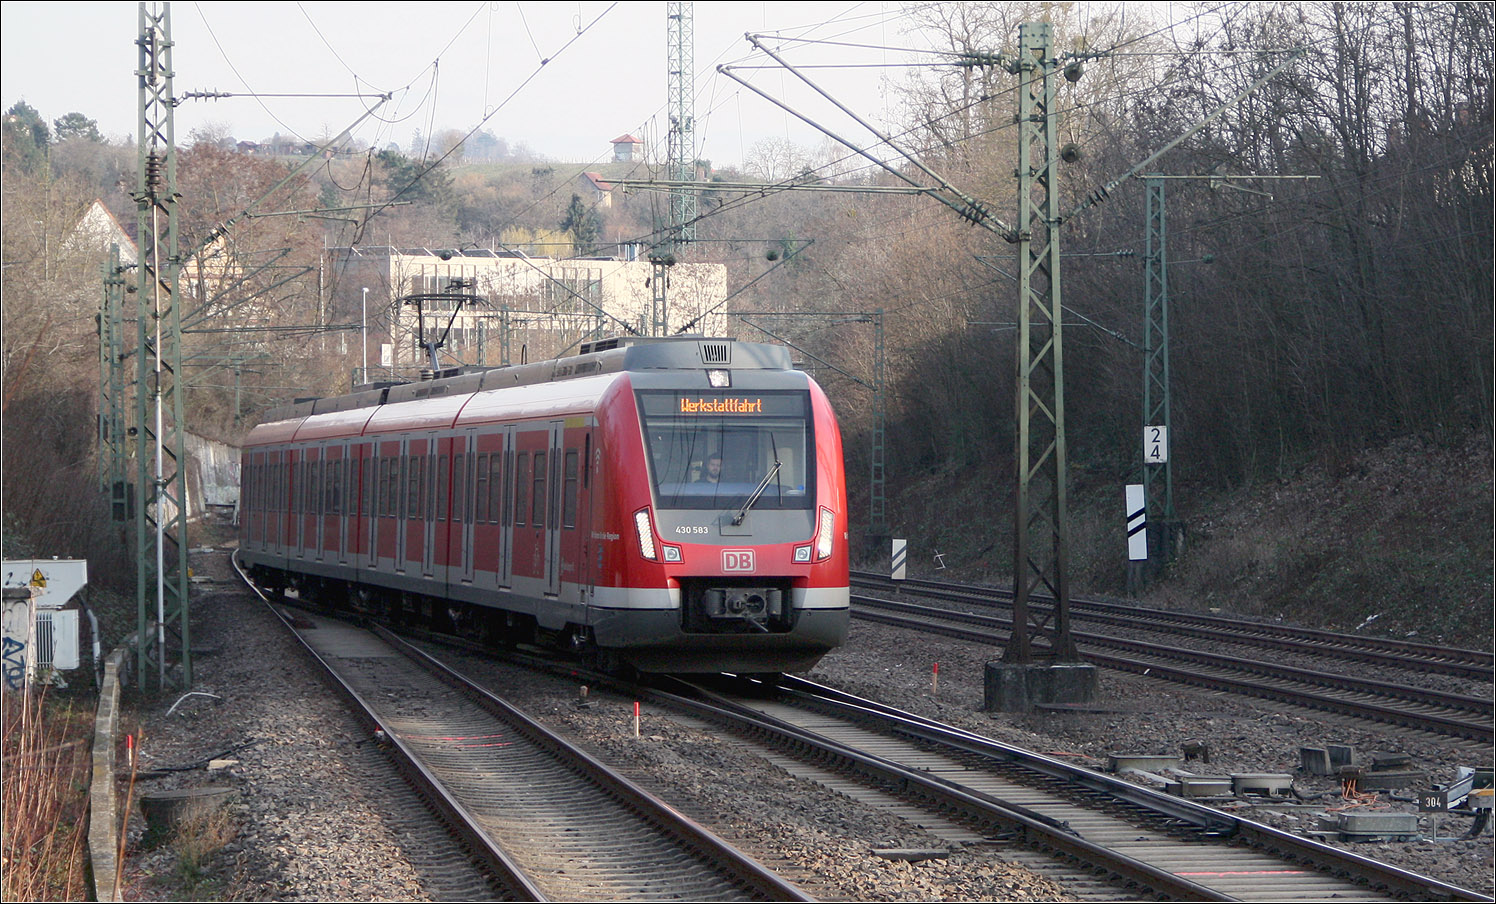 Zukünftig eine hohe Bedeutung - 

... wird dieser Gleiswechsel bei der Station 'Nürnberger Straße' erhalten. Heute wird dieser Gleiswechsel hauptsächlich für Güterzüge der Rems- und Murrbahn genutzt, um über eine eingleisige Verbindungskurve auf die Filstal- und Schusterbahn zu gelangen bzw. von diesen auf die Rems- und Murrbahn.

Aufgrund von Stuttgart 21 werden ab voraussichtlich 2025 viele Regional- und IC-Züge der Rems- und Murrbahn über diesen Gleiswechsel und Verbindungskurve in beiden Fahrtrichtungen an die unterirdische Zuführung von Untertürkheim her an den neuen Hauptbahnhof angeschlossen um diese dann in Richtung Feuerbach zur Durchbindung beispielsweise nach Karlsruhe durchbinden zu können. Das stadtauswärtige Gleis der S2 und S3 wird dabei sehr oft gekreuzt werden müssen. Ein weiterer betrieblicher Engpass entsteht hier, bedingt durch das Millardenprojekt Stuttgart 21.

Bei dem Einzelwagen der Baureihe 430, der wohl vom Betriebshof in Plochingen kommt, handelt sich um ein Wagen der früher gelieferten Serie dieser Baureihe, erkennbar an der Stirnbeleuchtung.

28.02.2023 (M)